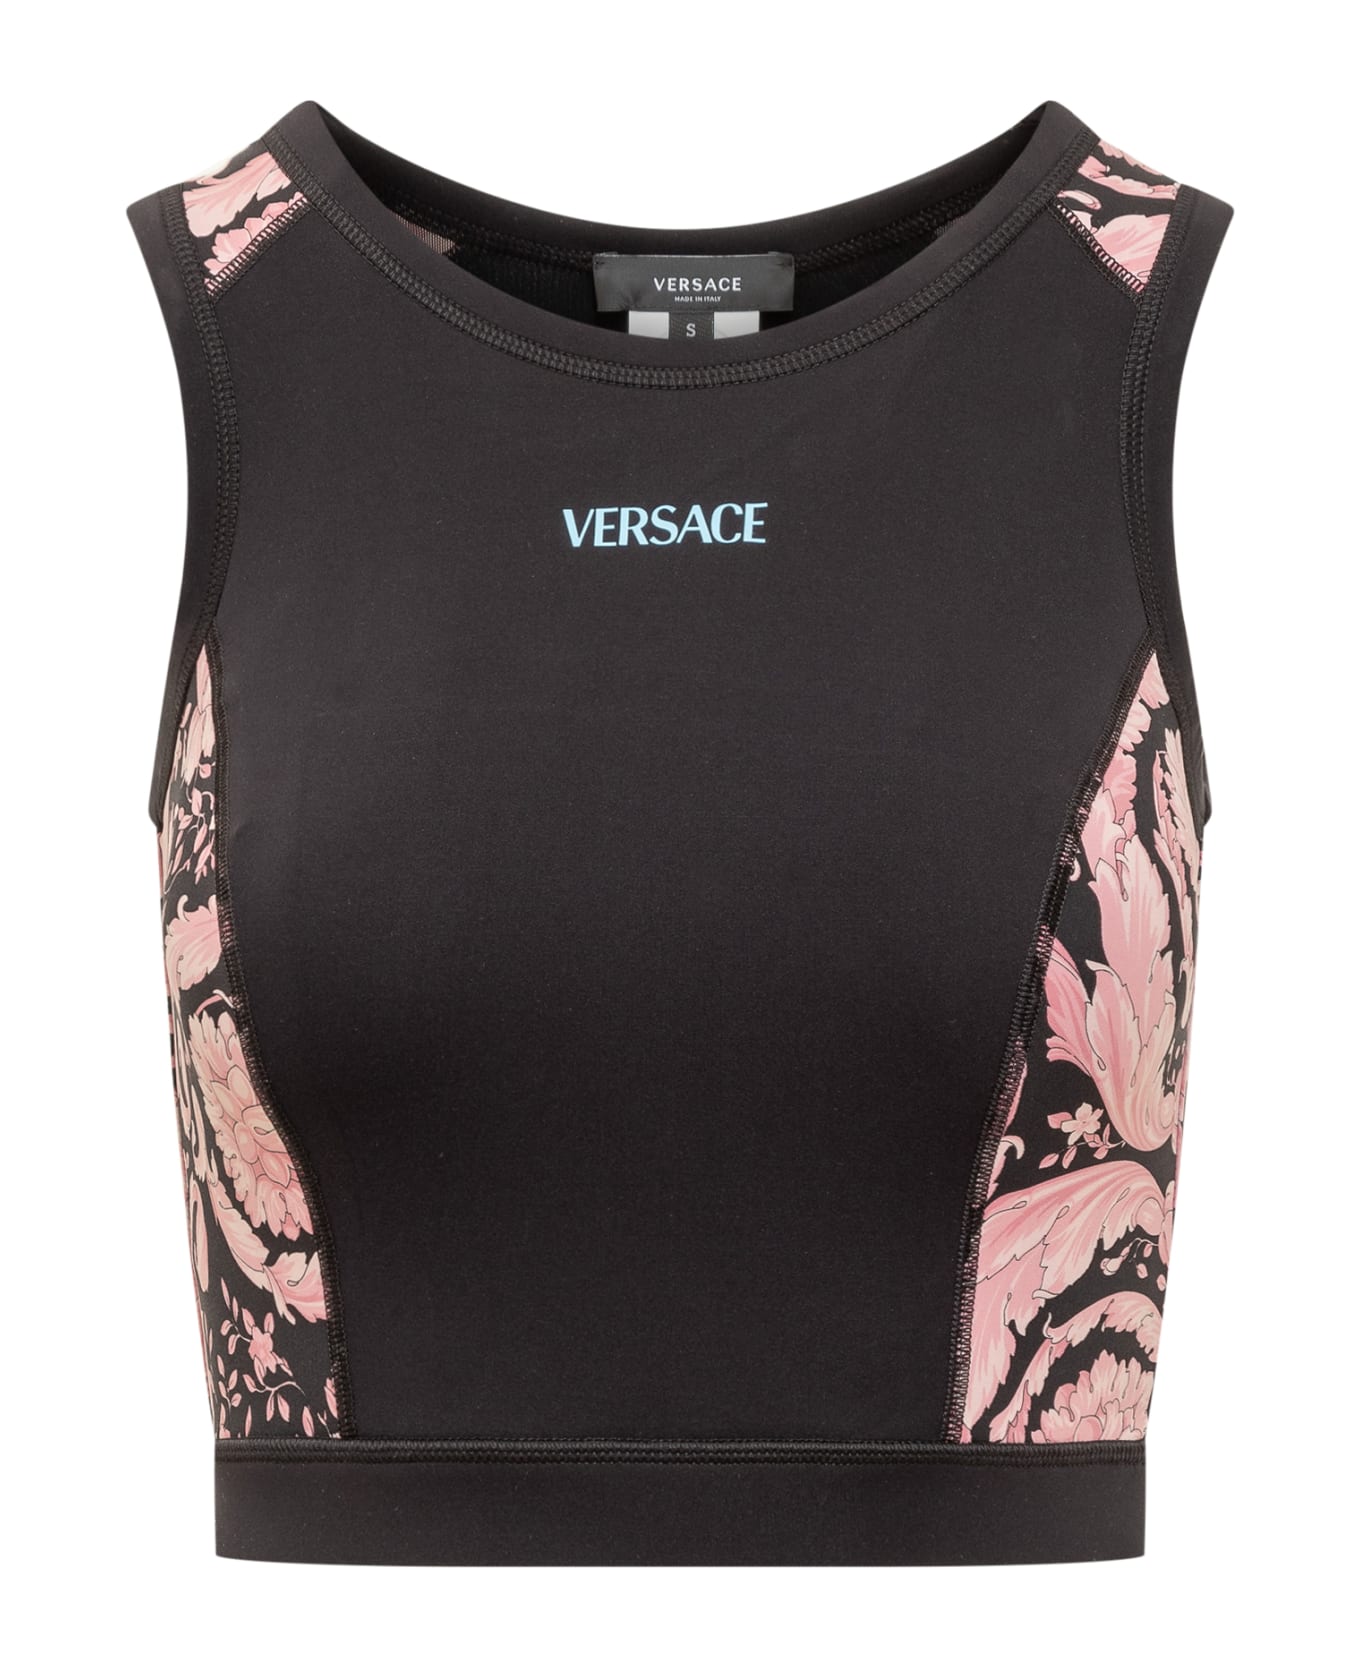 Versace Sport Top - ROSA-NERO